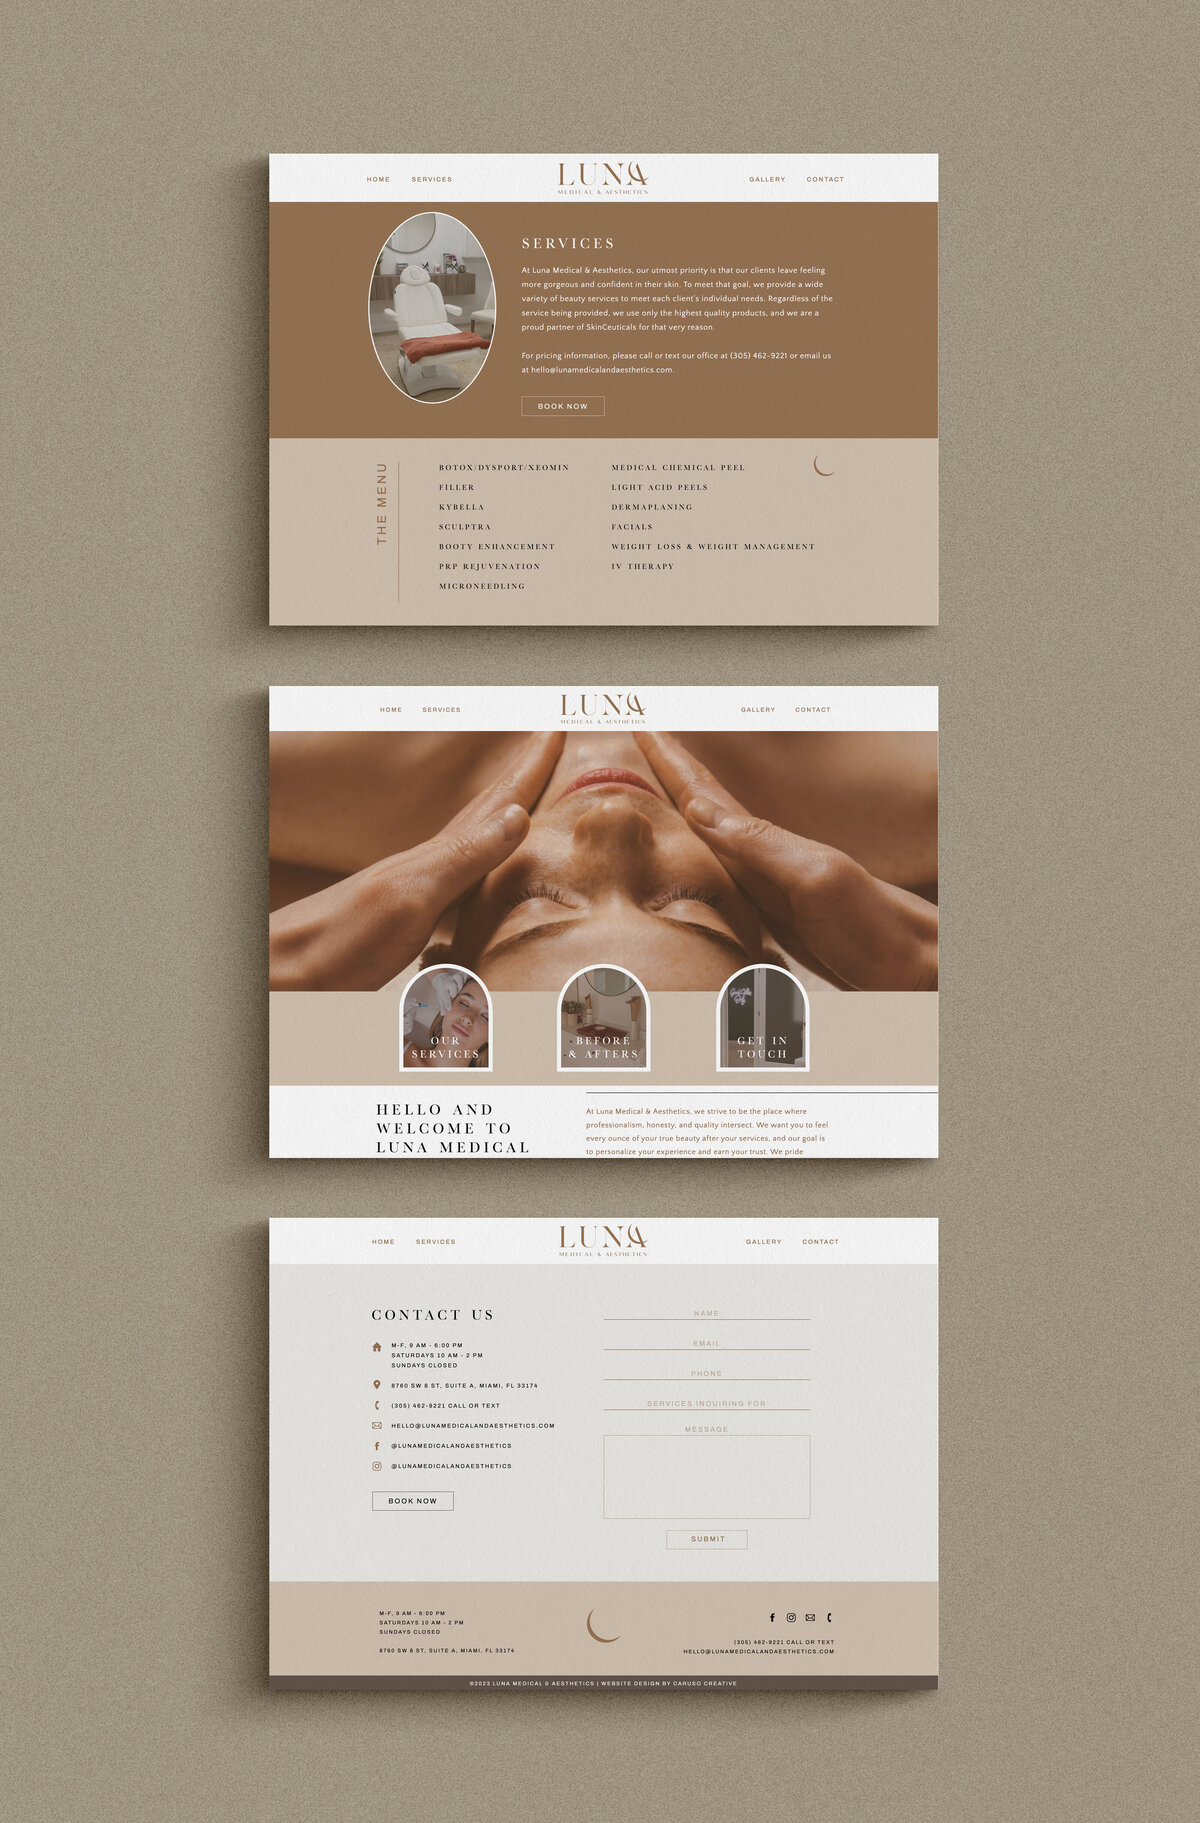 Luna Medical custom Showit website design